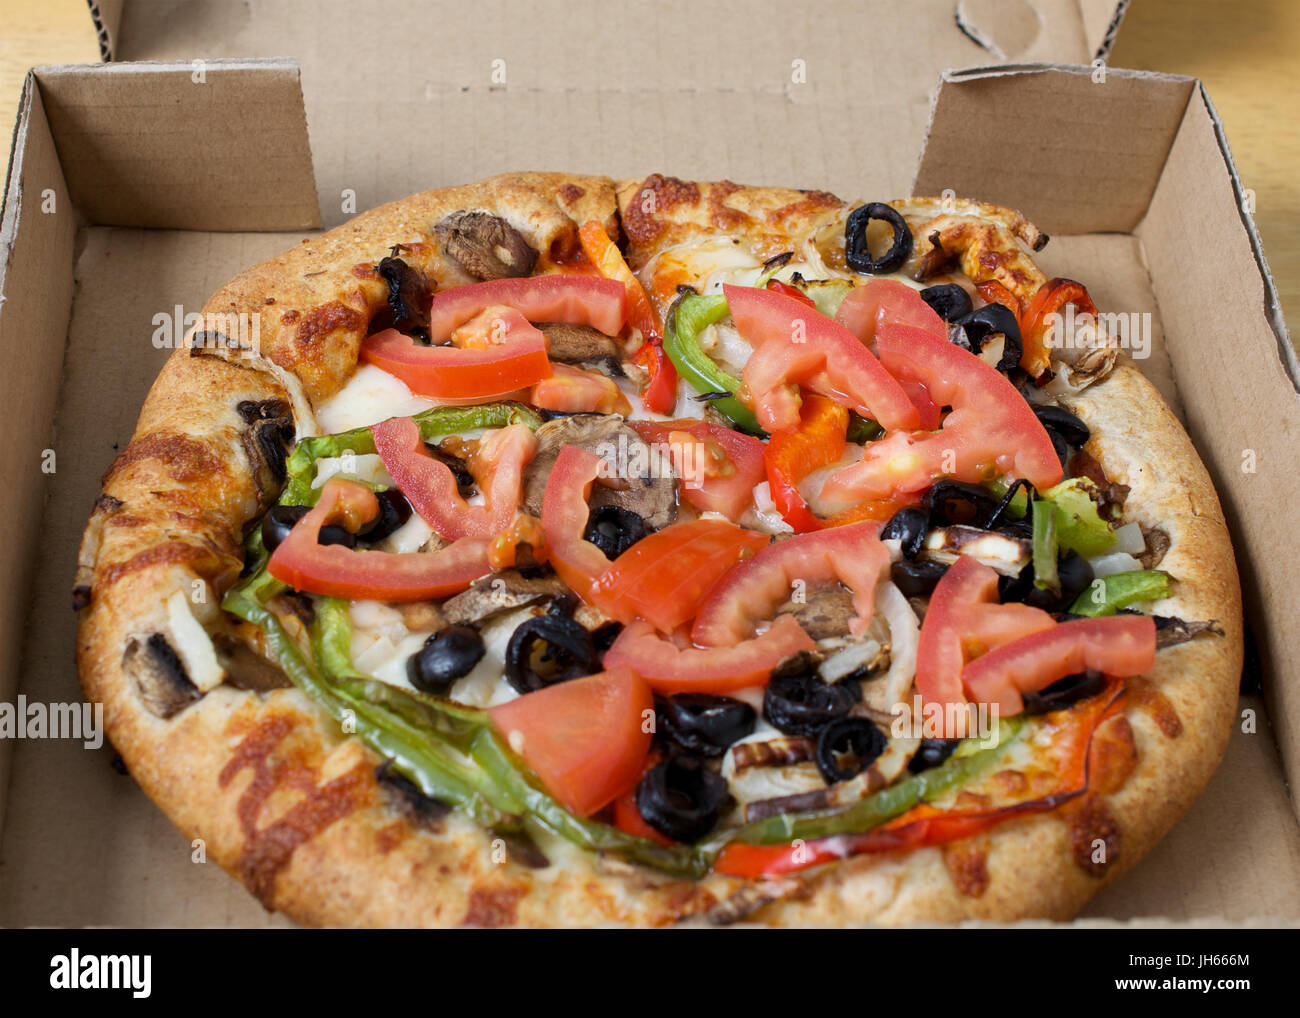 Gros plan sur pizza végétarienne en boîte carton servi avec tomates, olives noires, champignons, oignons, poivrons et mozzarella Banque D'Images